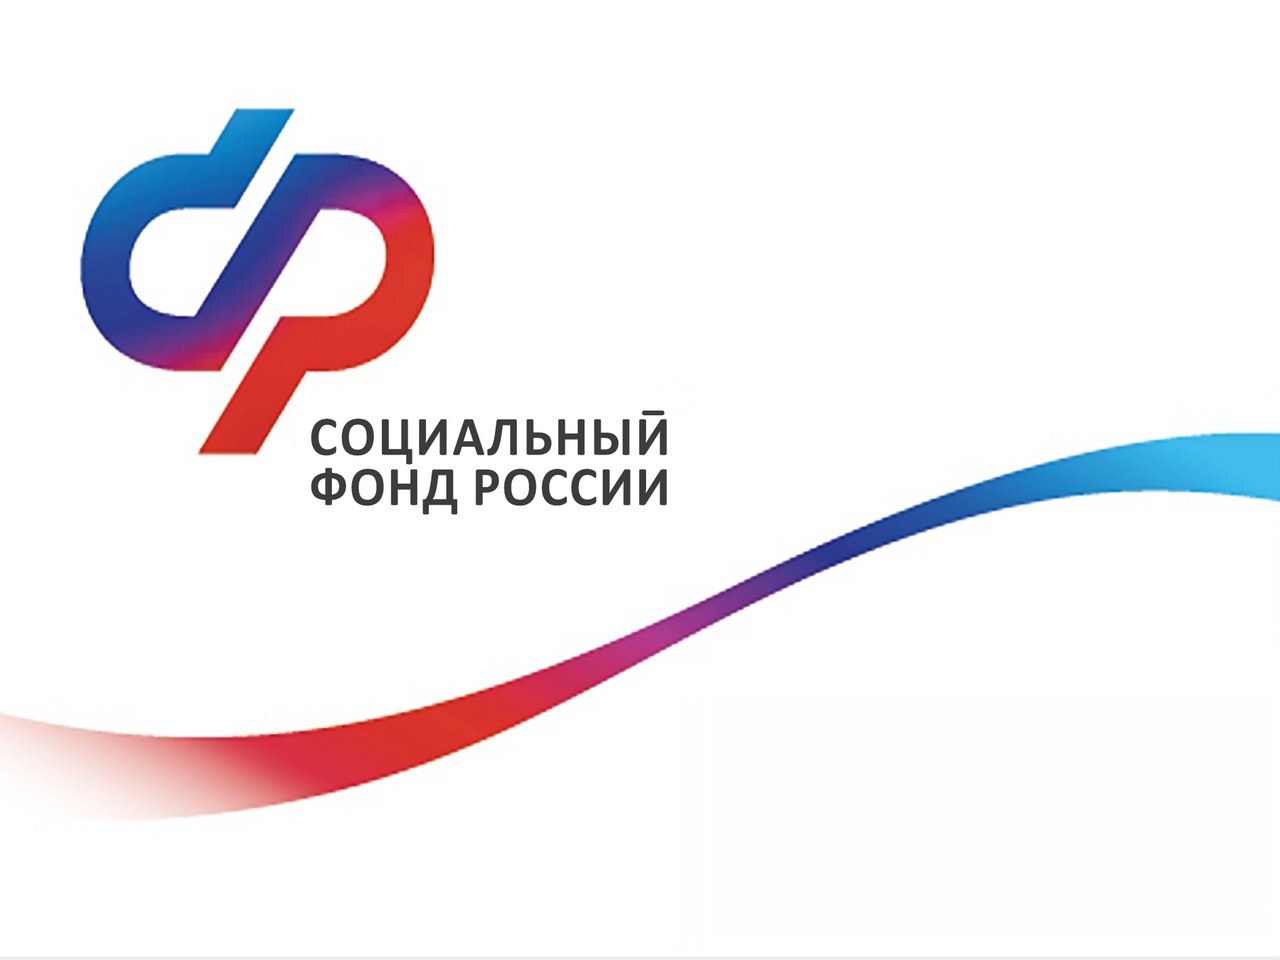 1330 жителей Кировской области получили более 140 тысячтехнических средств реабилитации с помощью электронных сертификатов.